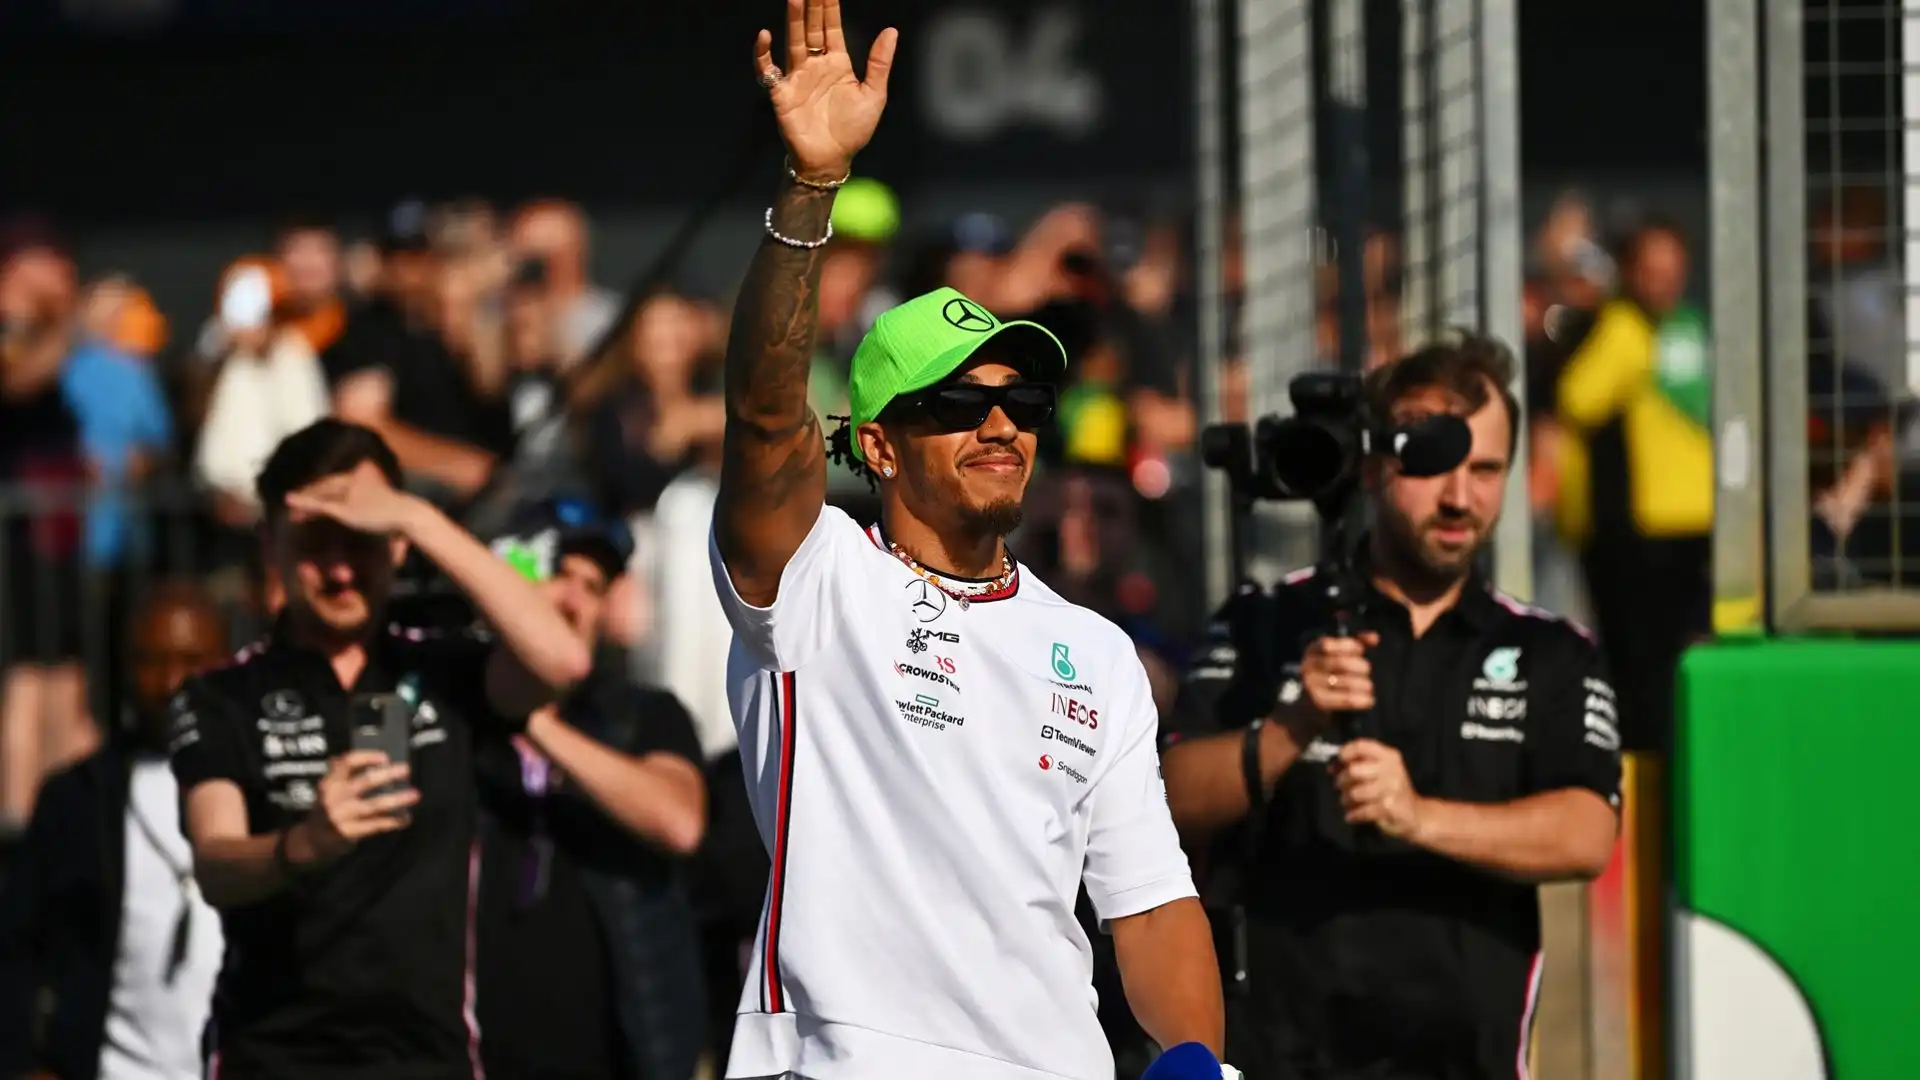 "Nel corso degli anni in più occasioni ci sono state conversazioni sulla possibilità che Lewis Hamilton si unisse alla Red Bull. Anche quest'anno c'è stato un contatto"